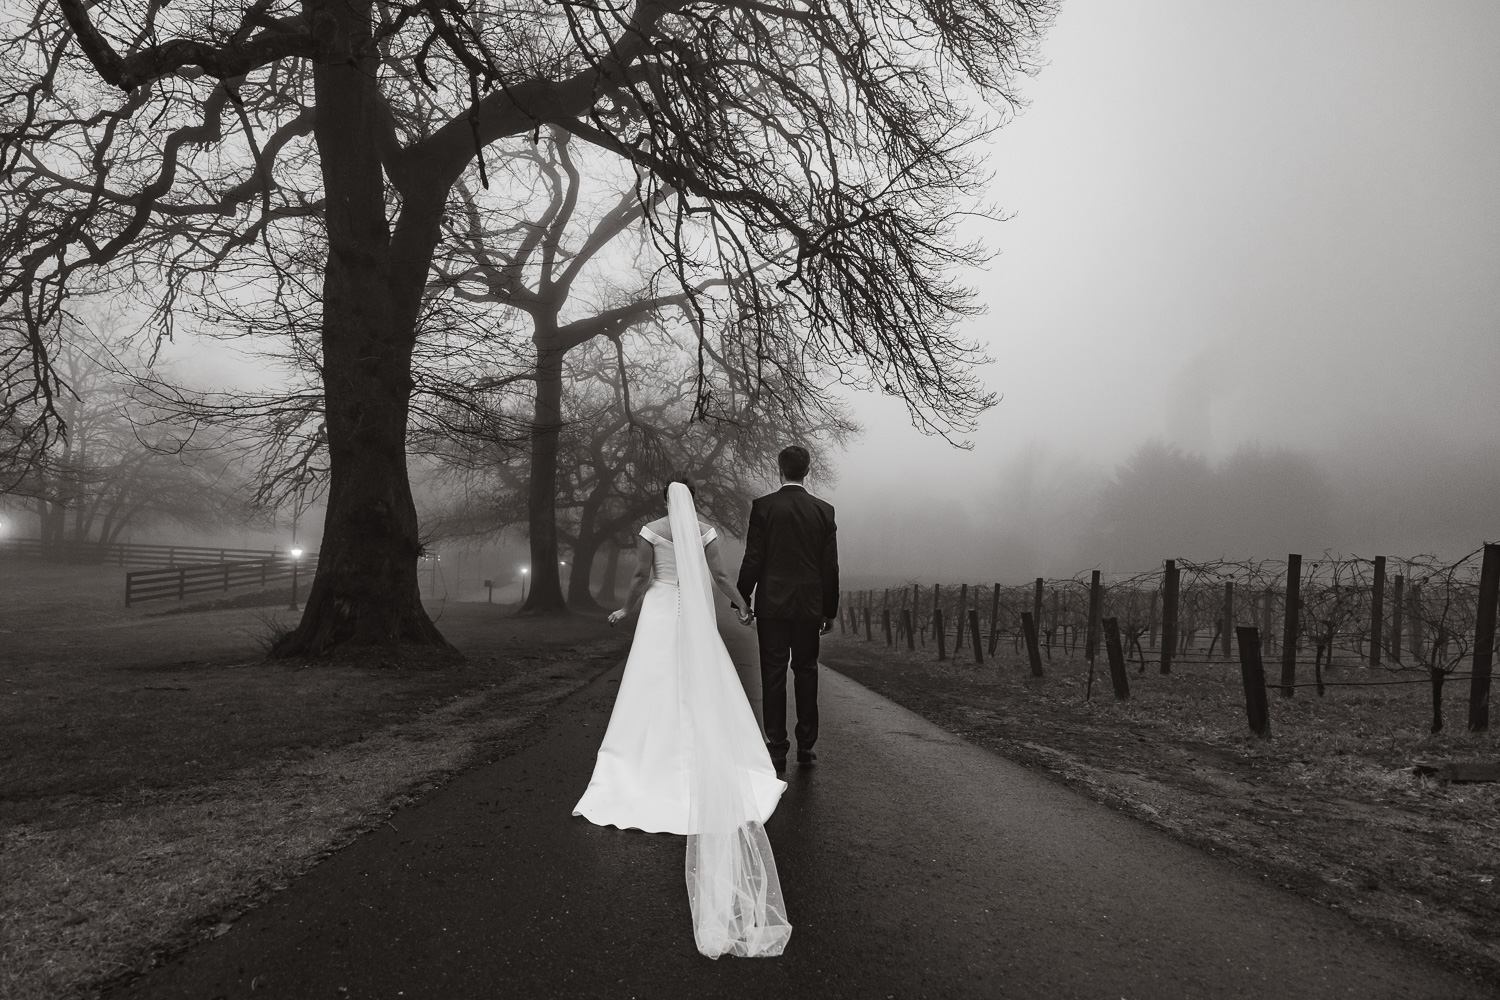 Mount lofty estate winter wedding fog